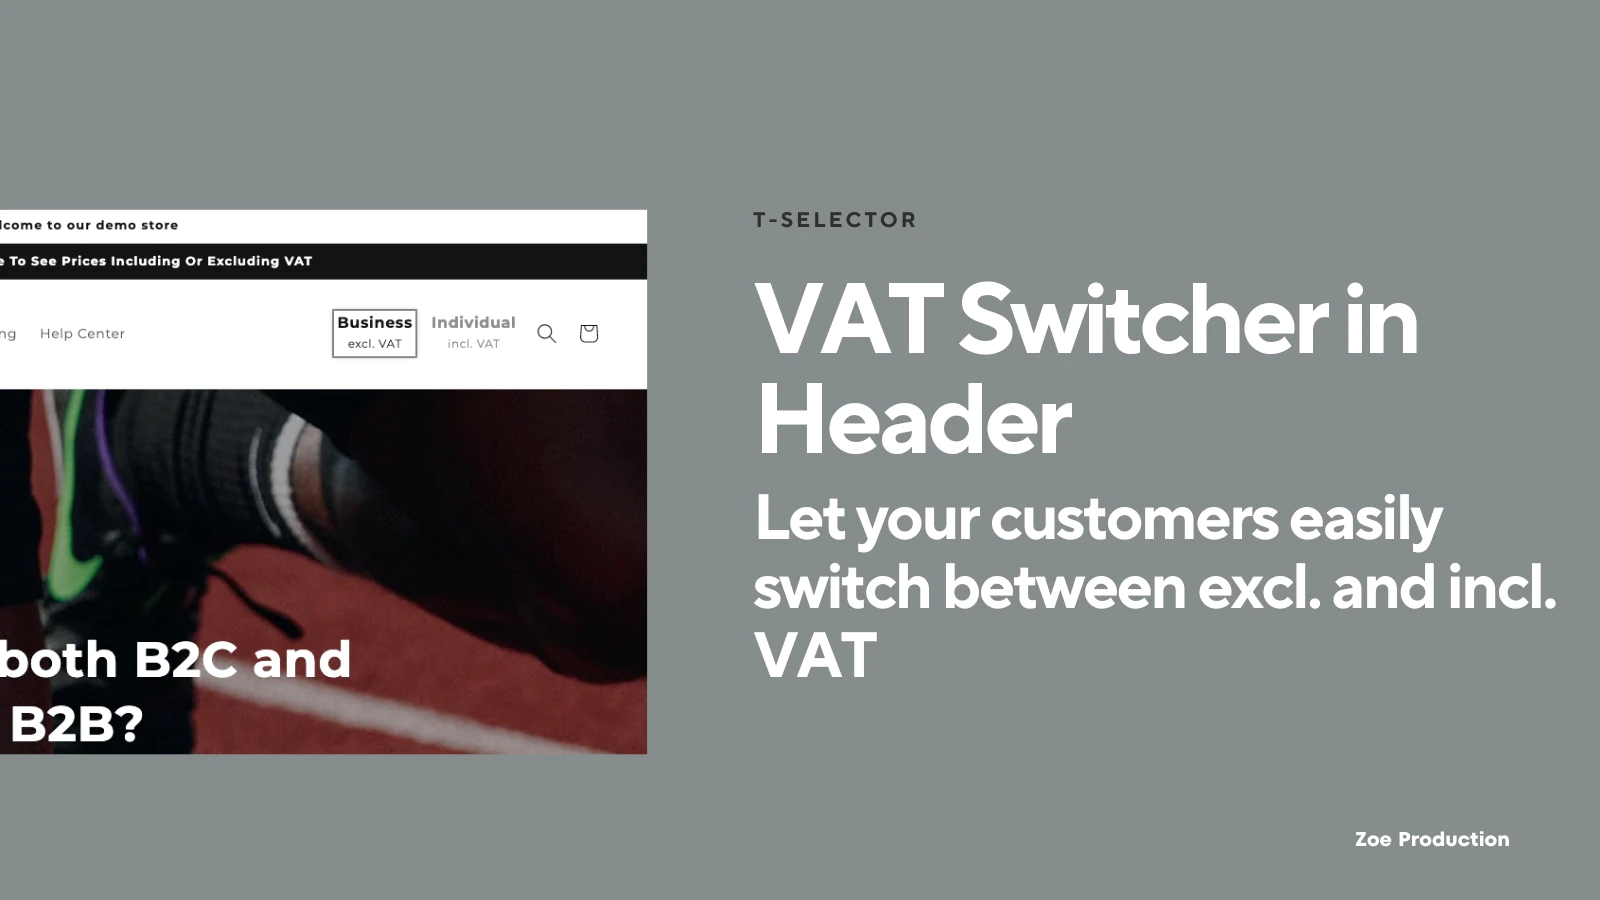 t-selector-vat-switcher-switcher-in-header